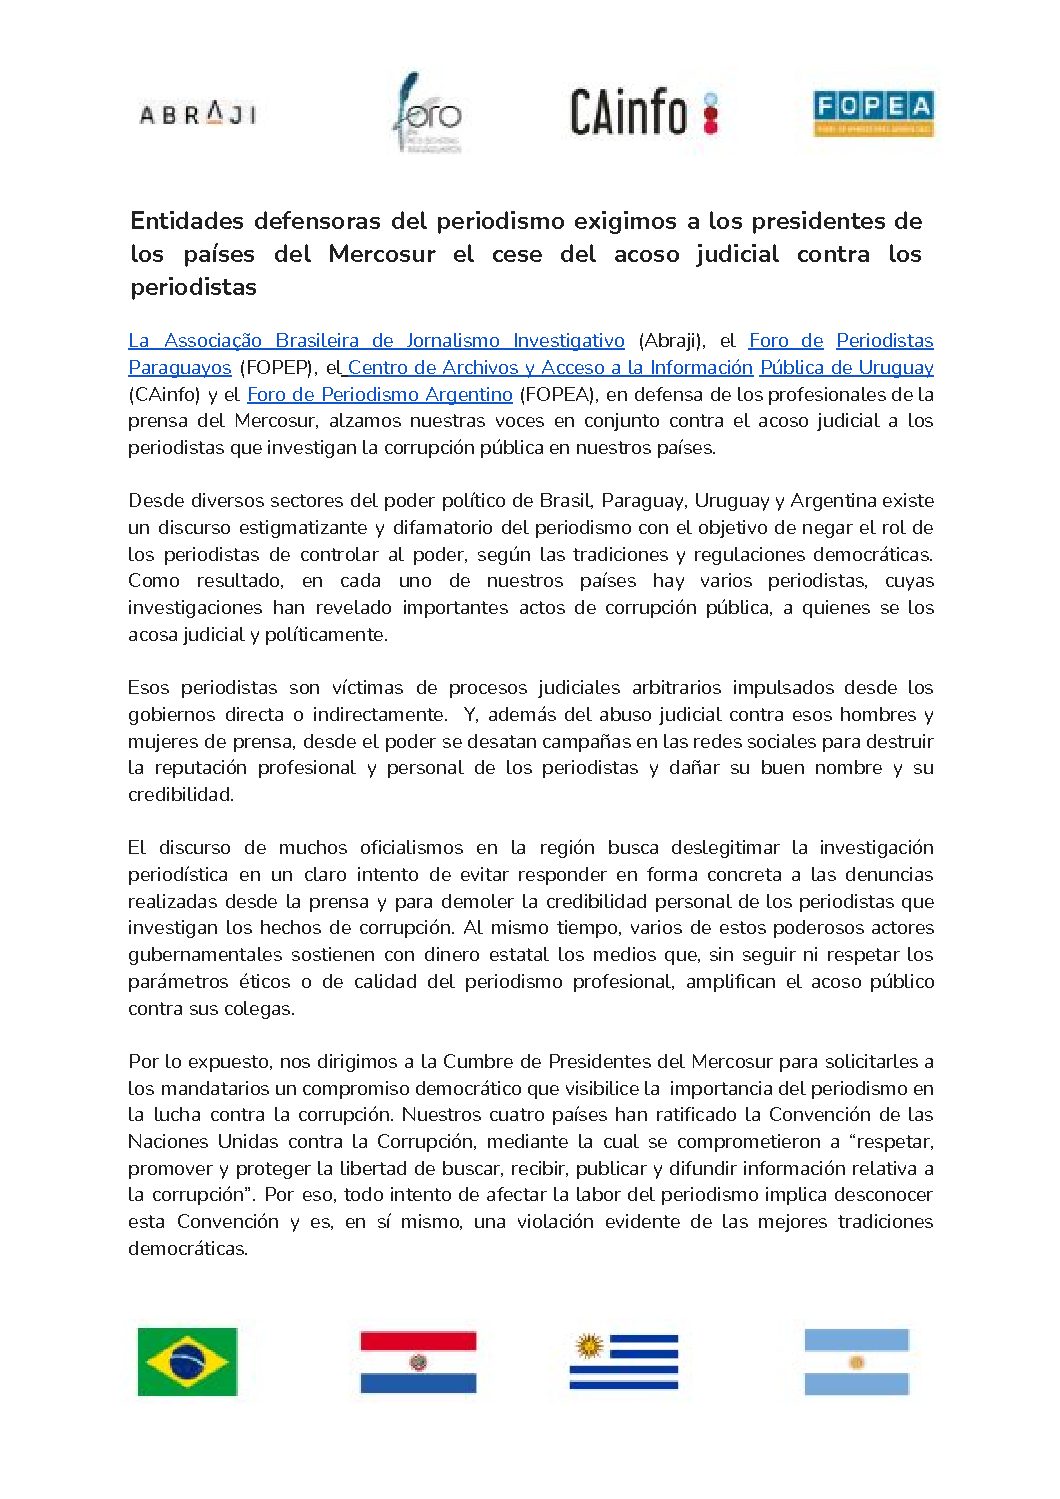 Entidades defensoras del periodismo exigimos a los presidentes de los países del Mercosur el cese del acoso judicial contra los periodistas